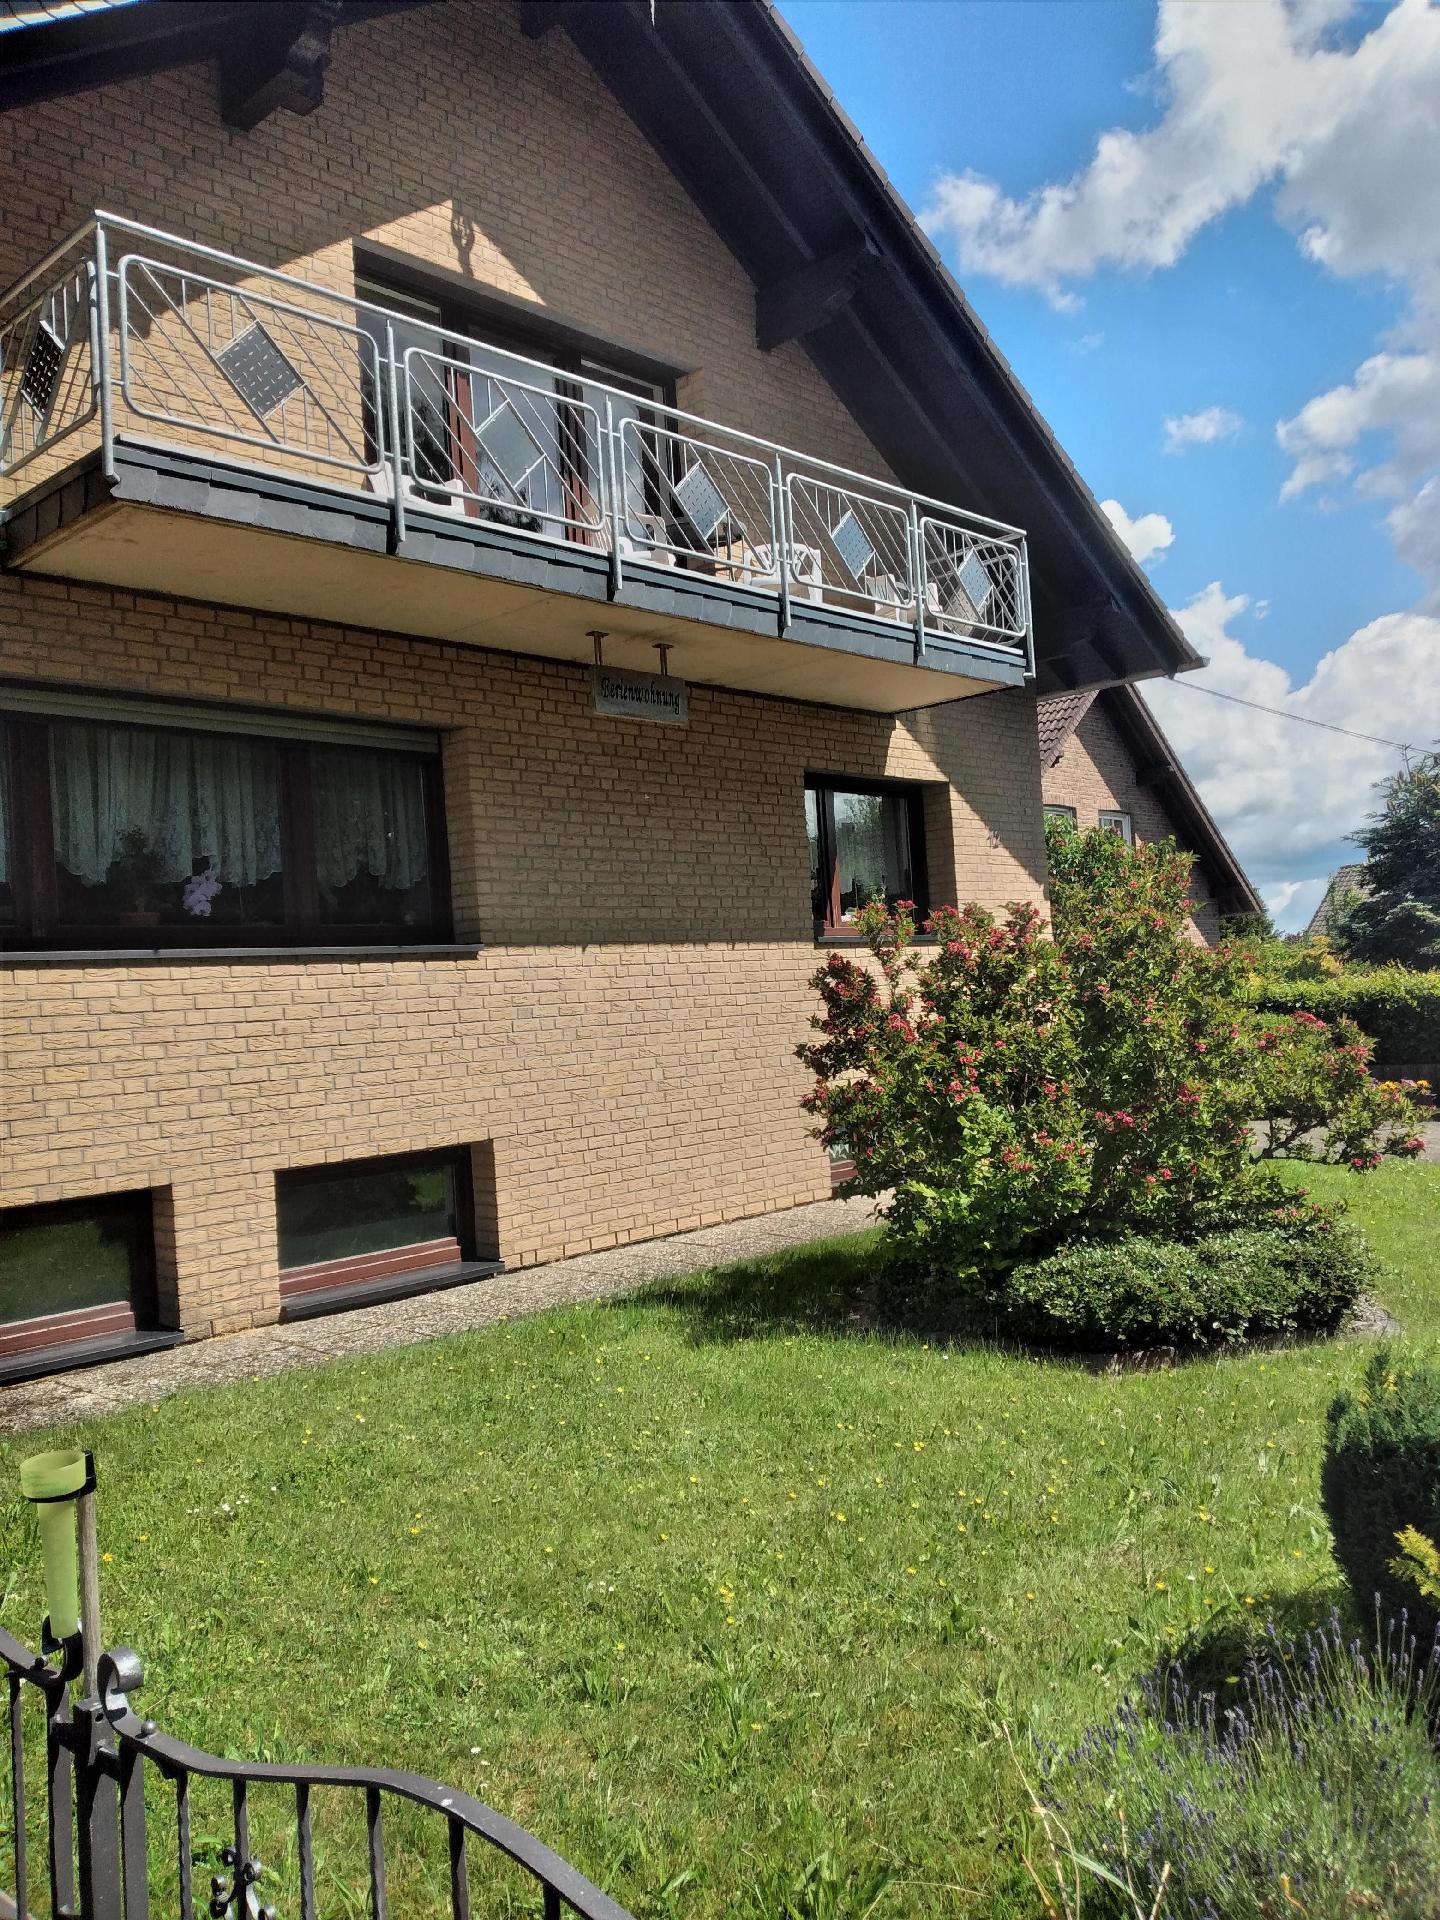 Nette Wohnung in Waldorf mit Garten Ferienhaus  Eifel in NRW